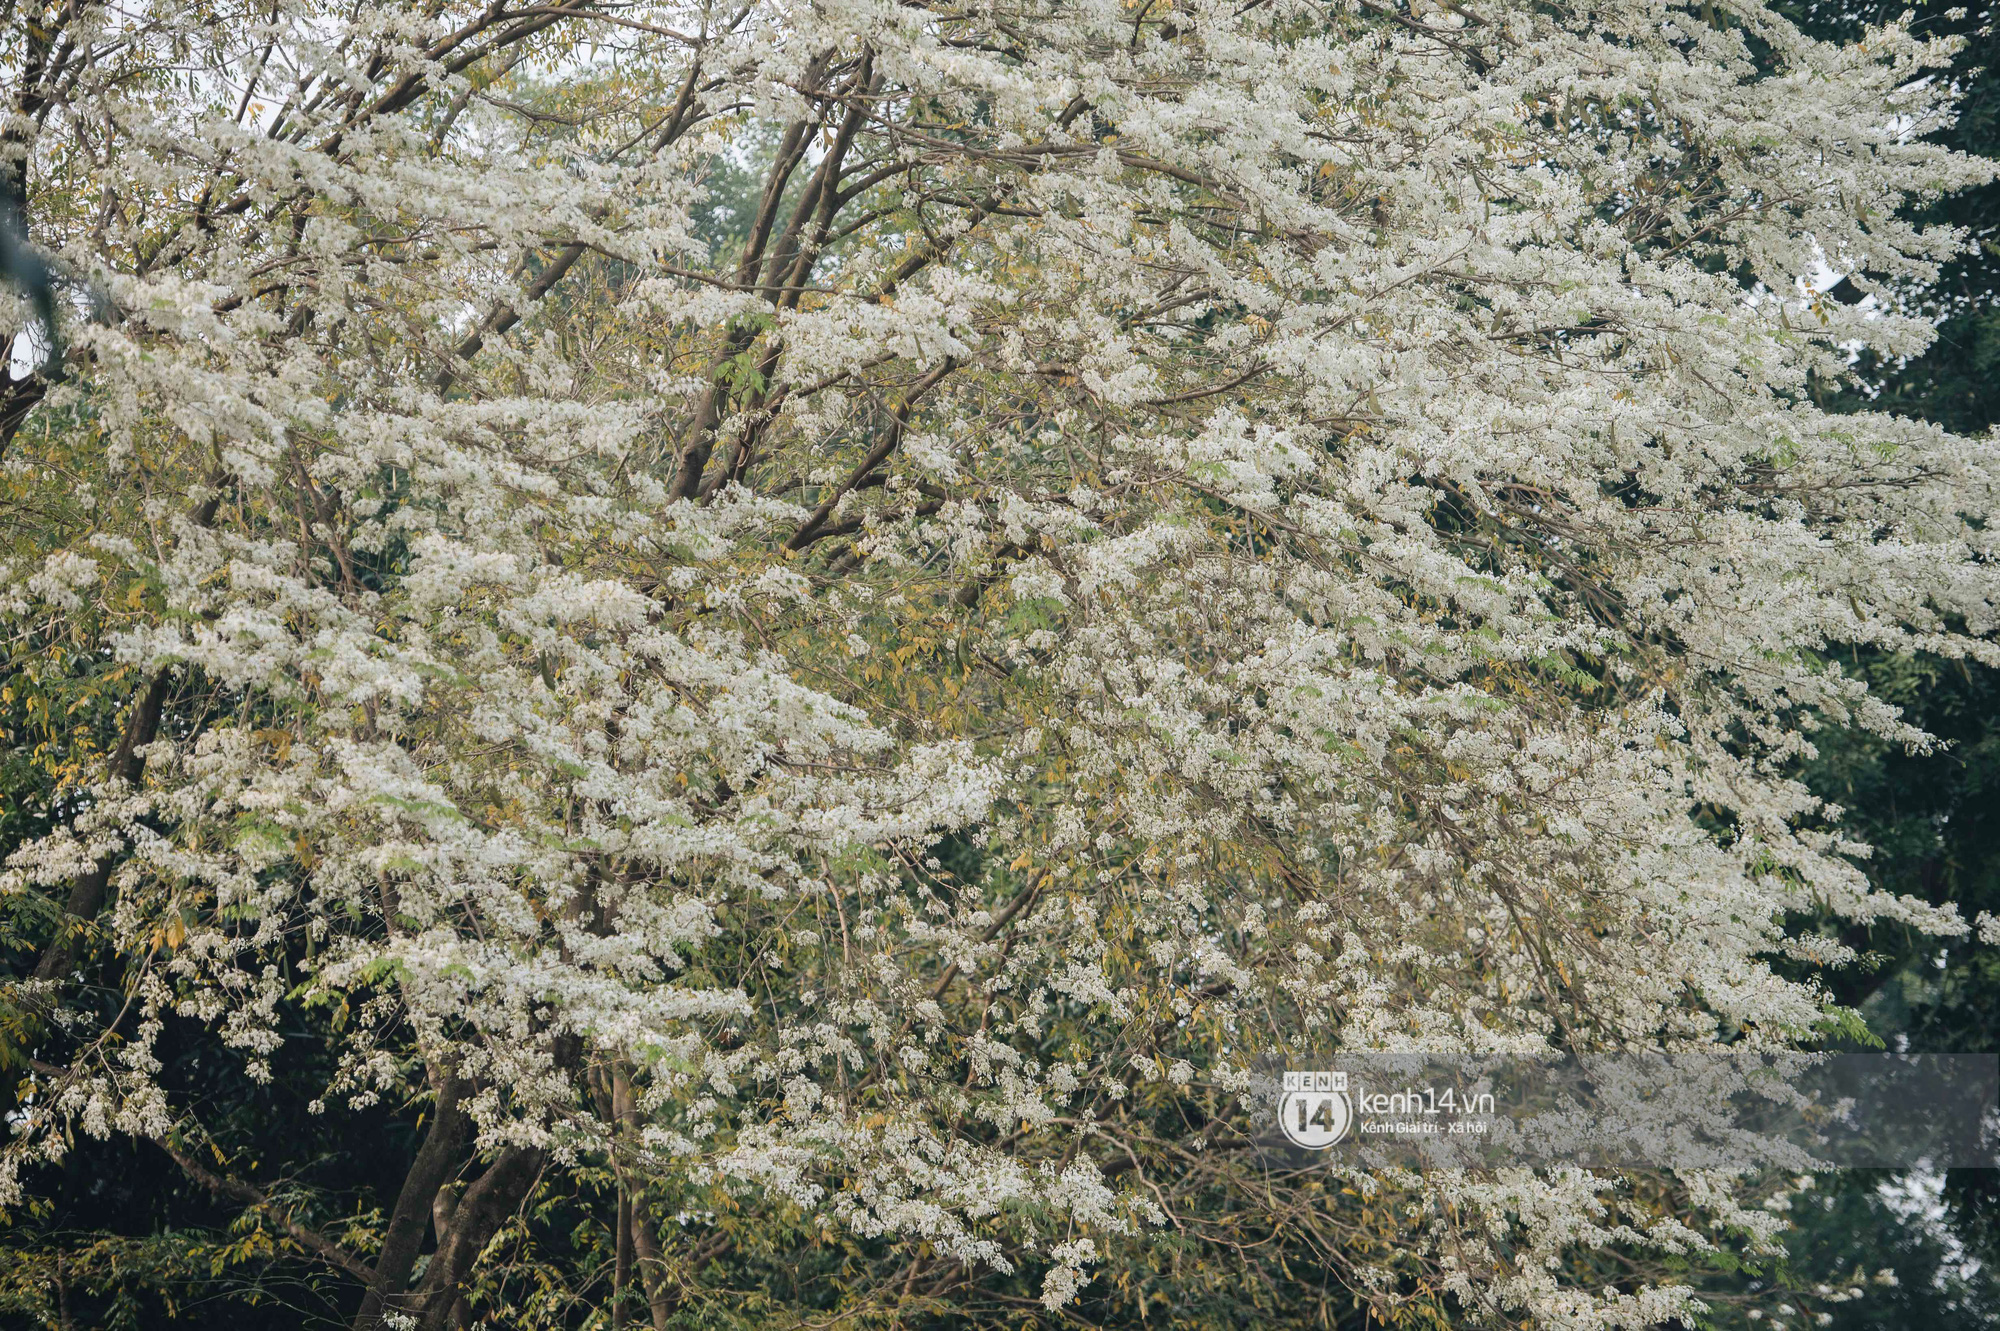 Chưa đến tháng 3, hoa sưa đã nở trắng trời: Lại một mùa hoa rất tình và rất Hà Nội! - Ảnh 17.